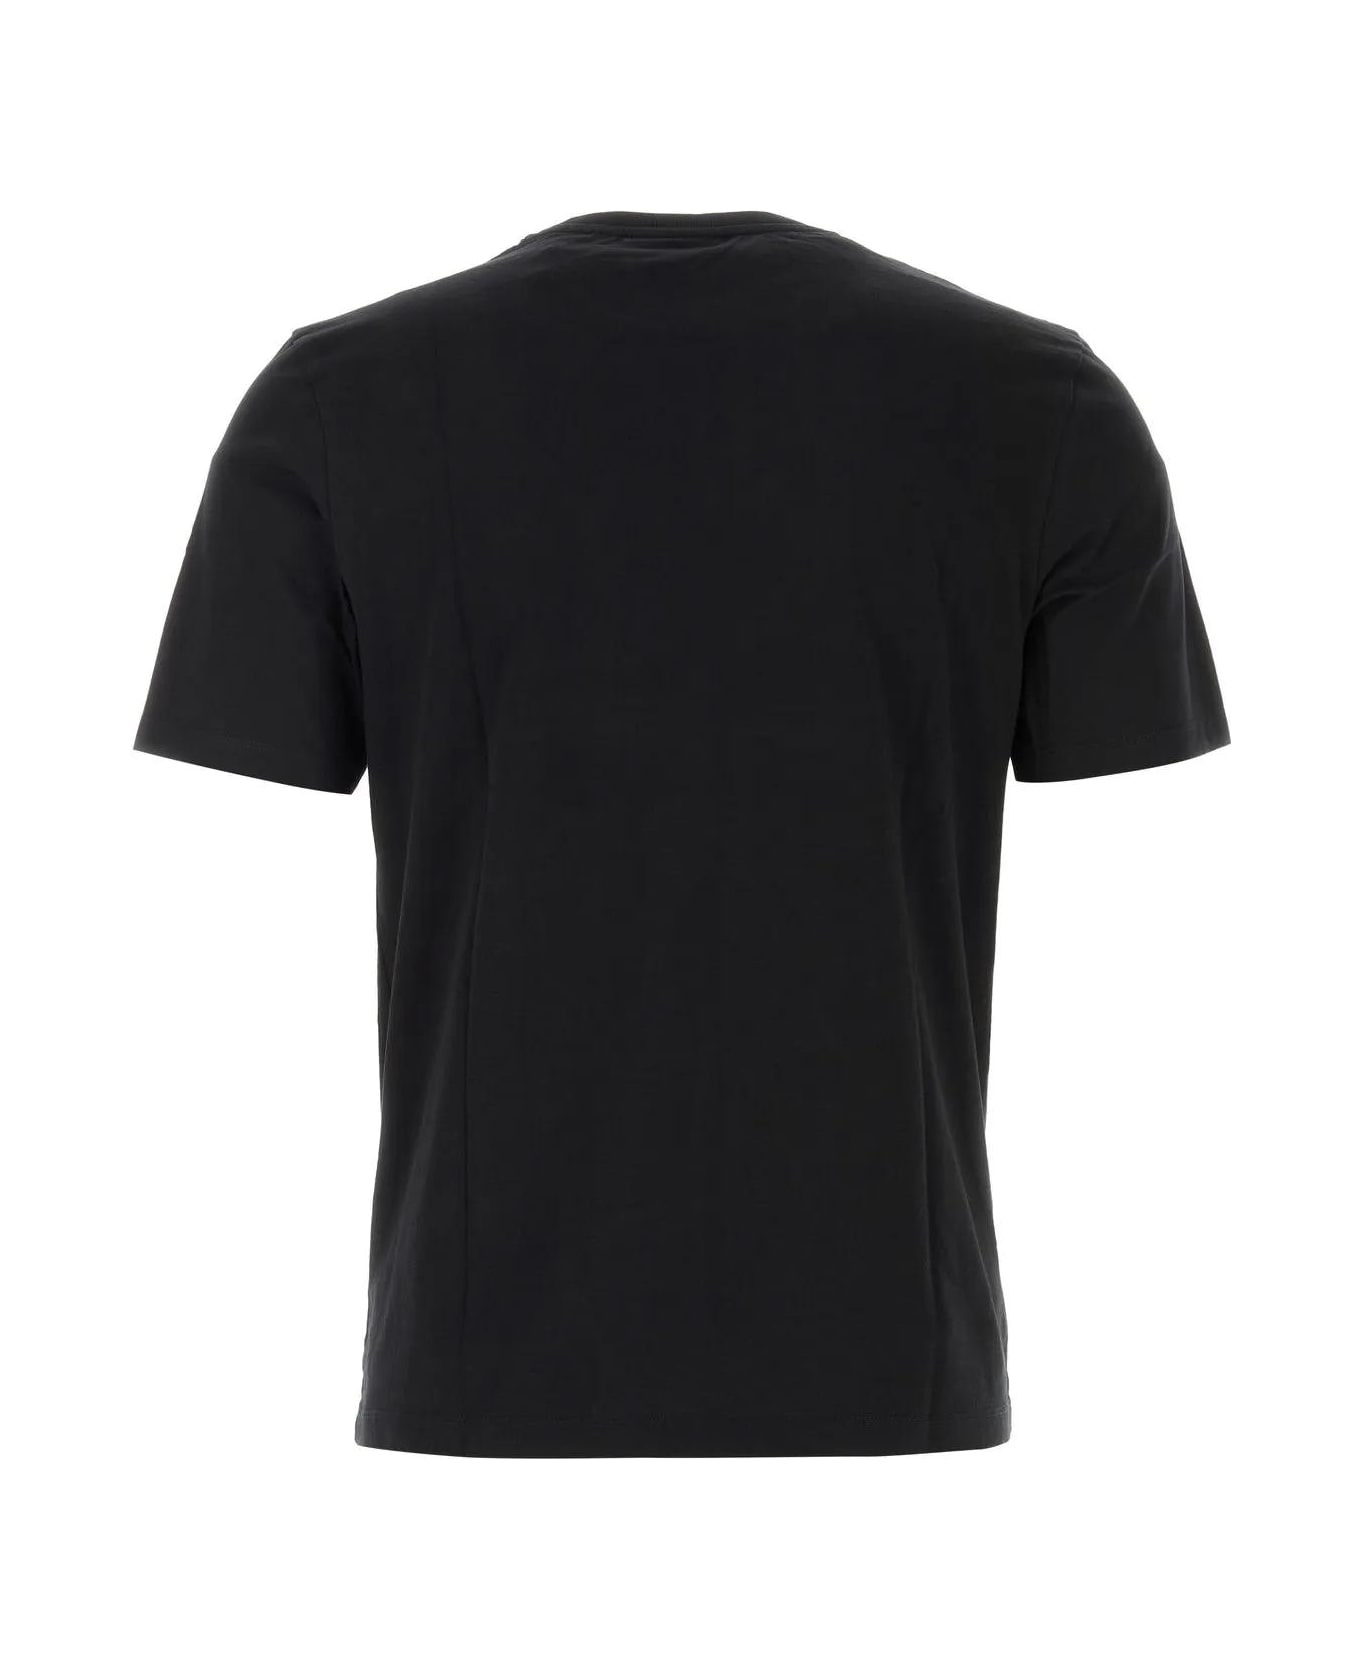 Maison Kitsuné Black Cotton T-shirt - Black